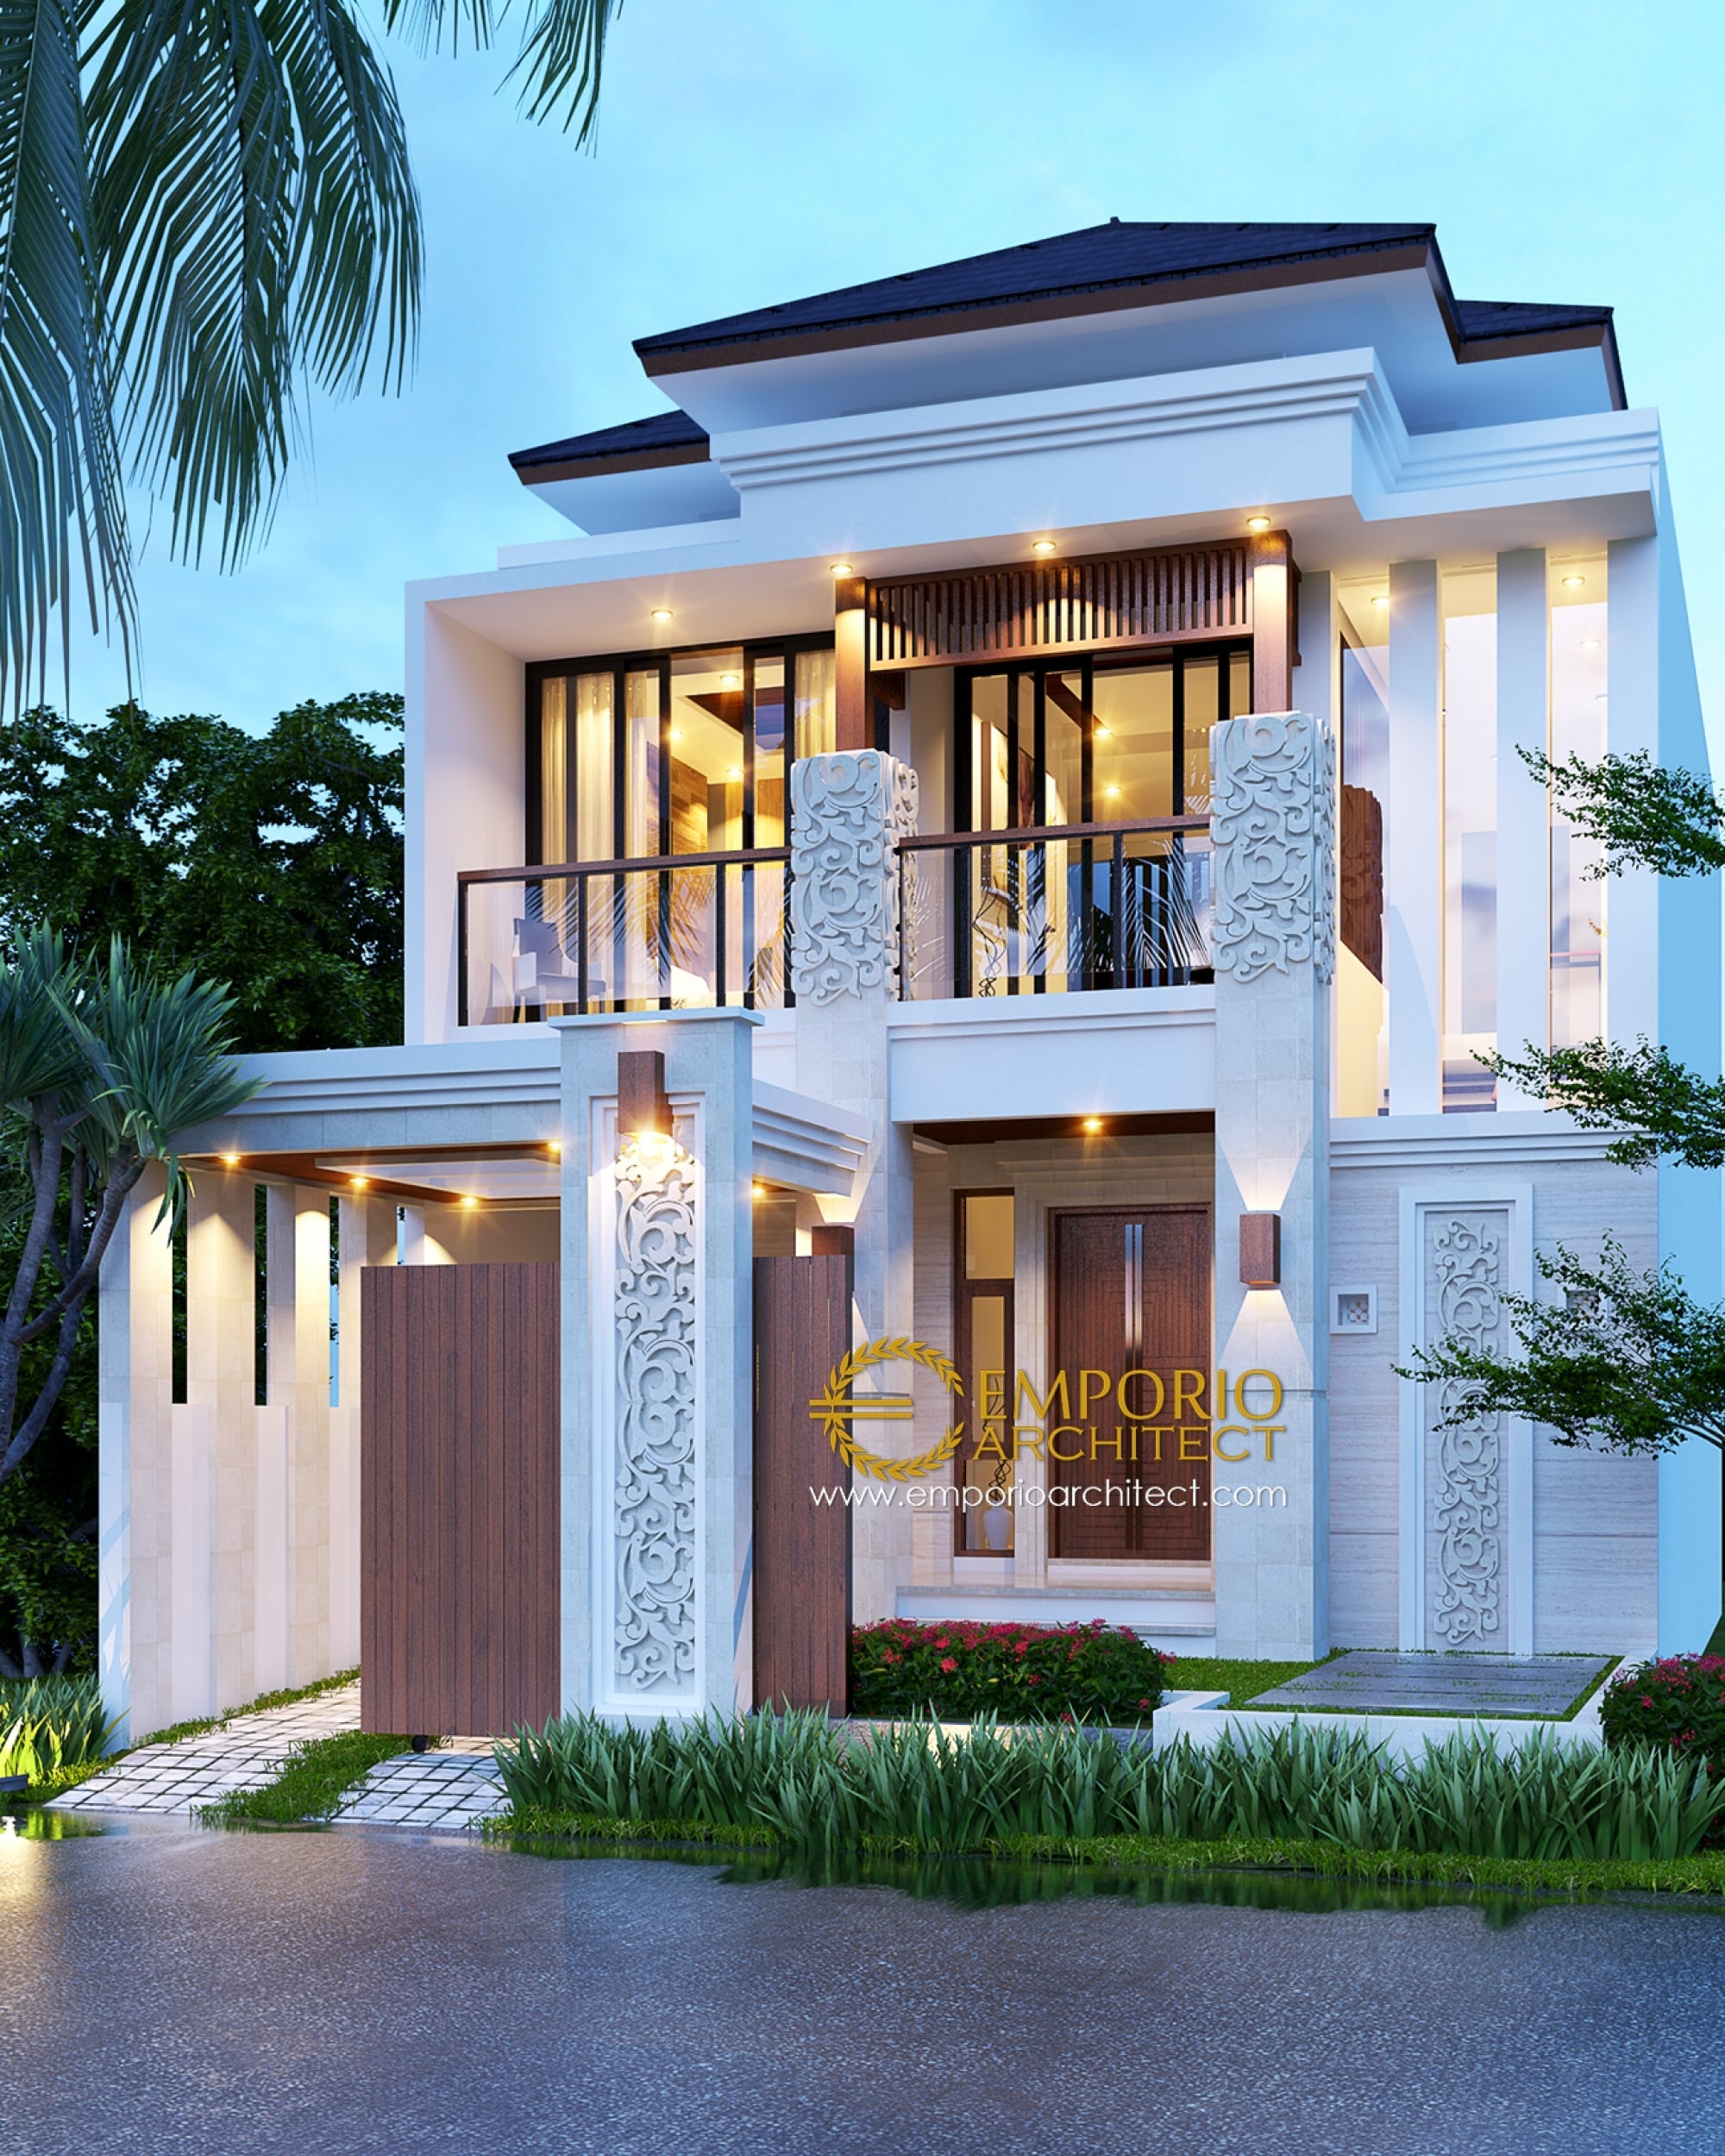 44 Ide Desain Rumah Nuansa Bali Modern Istimewa Banget Deagam Design